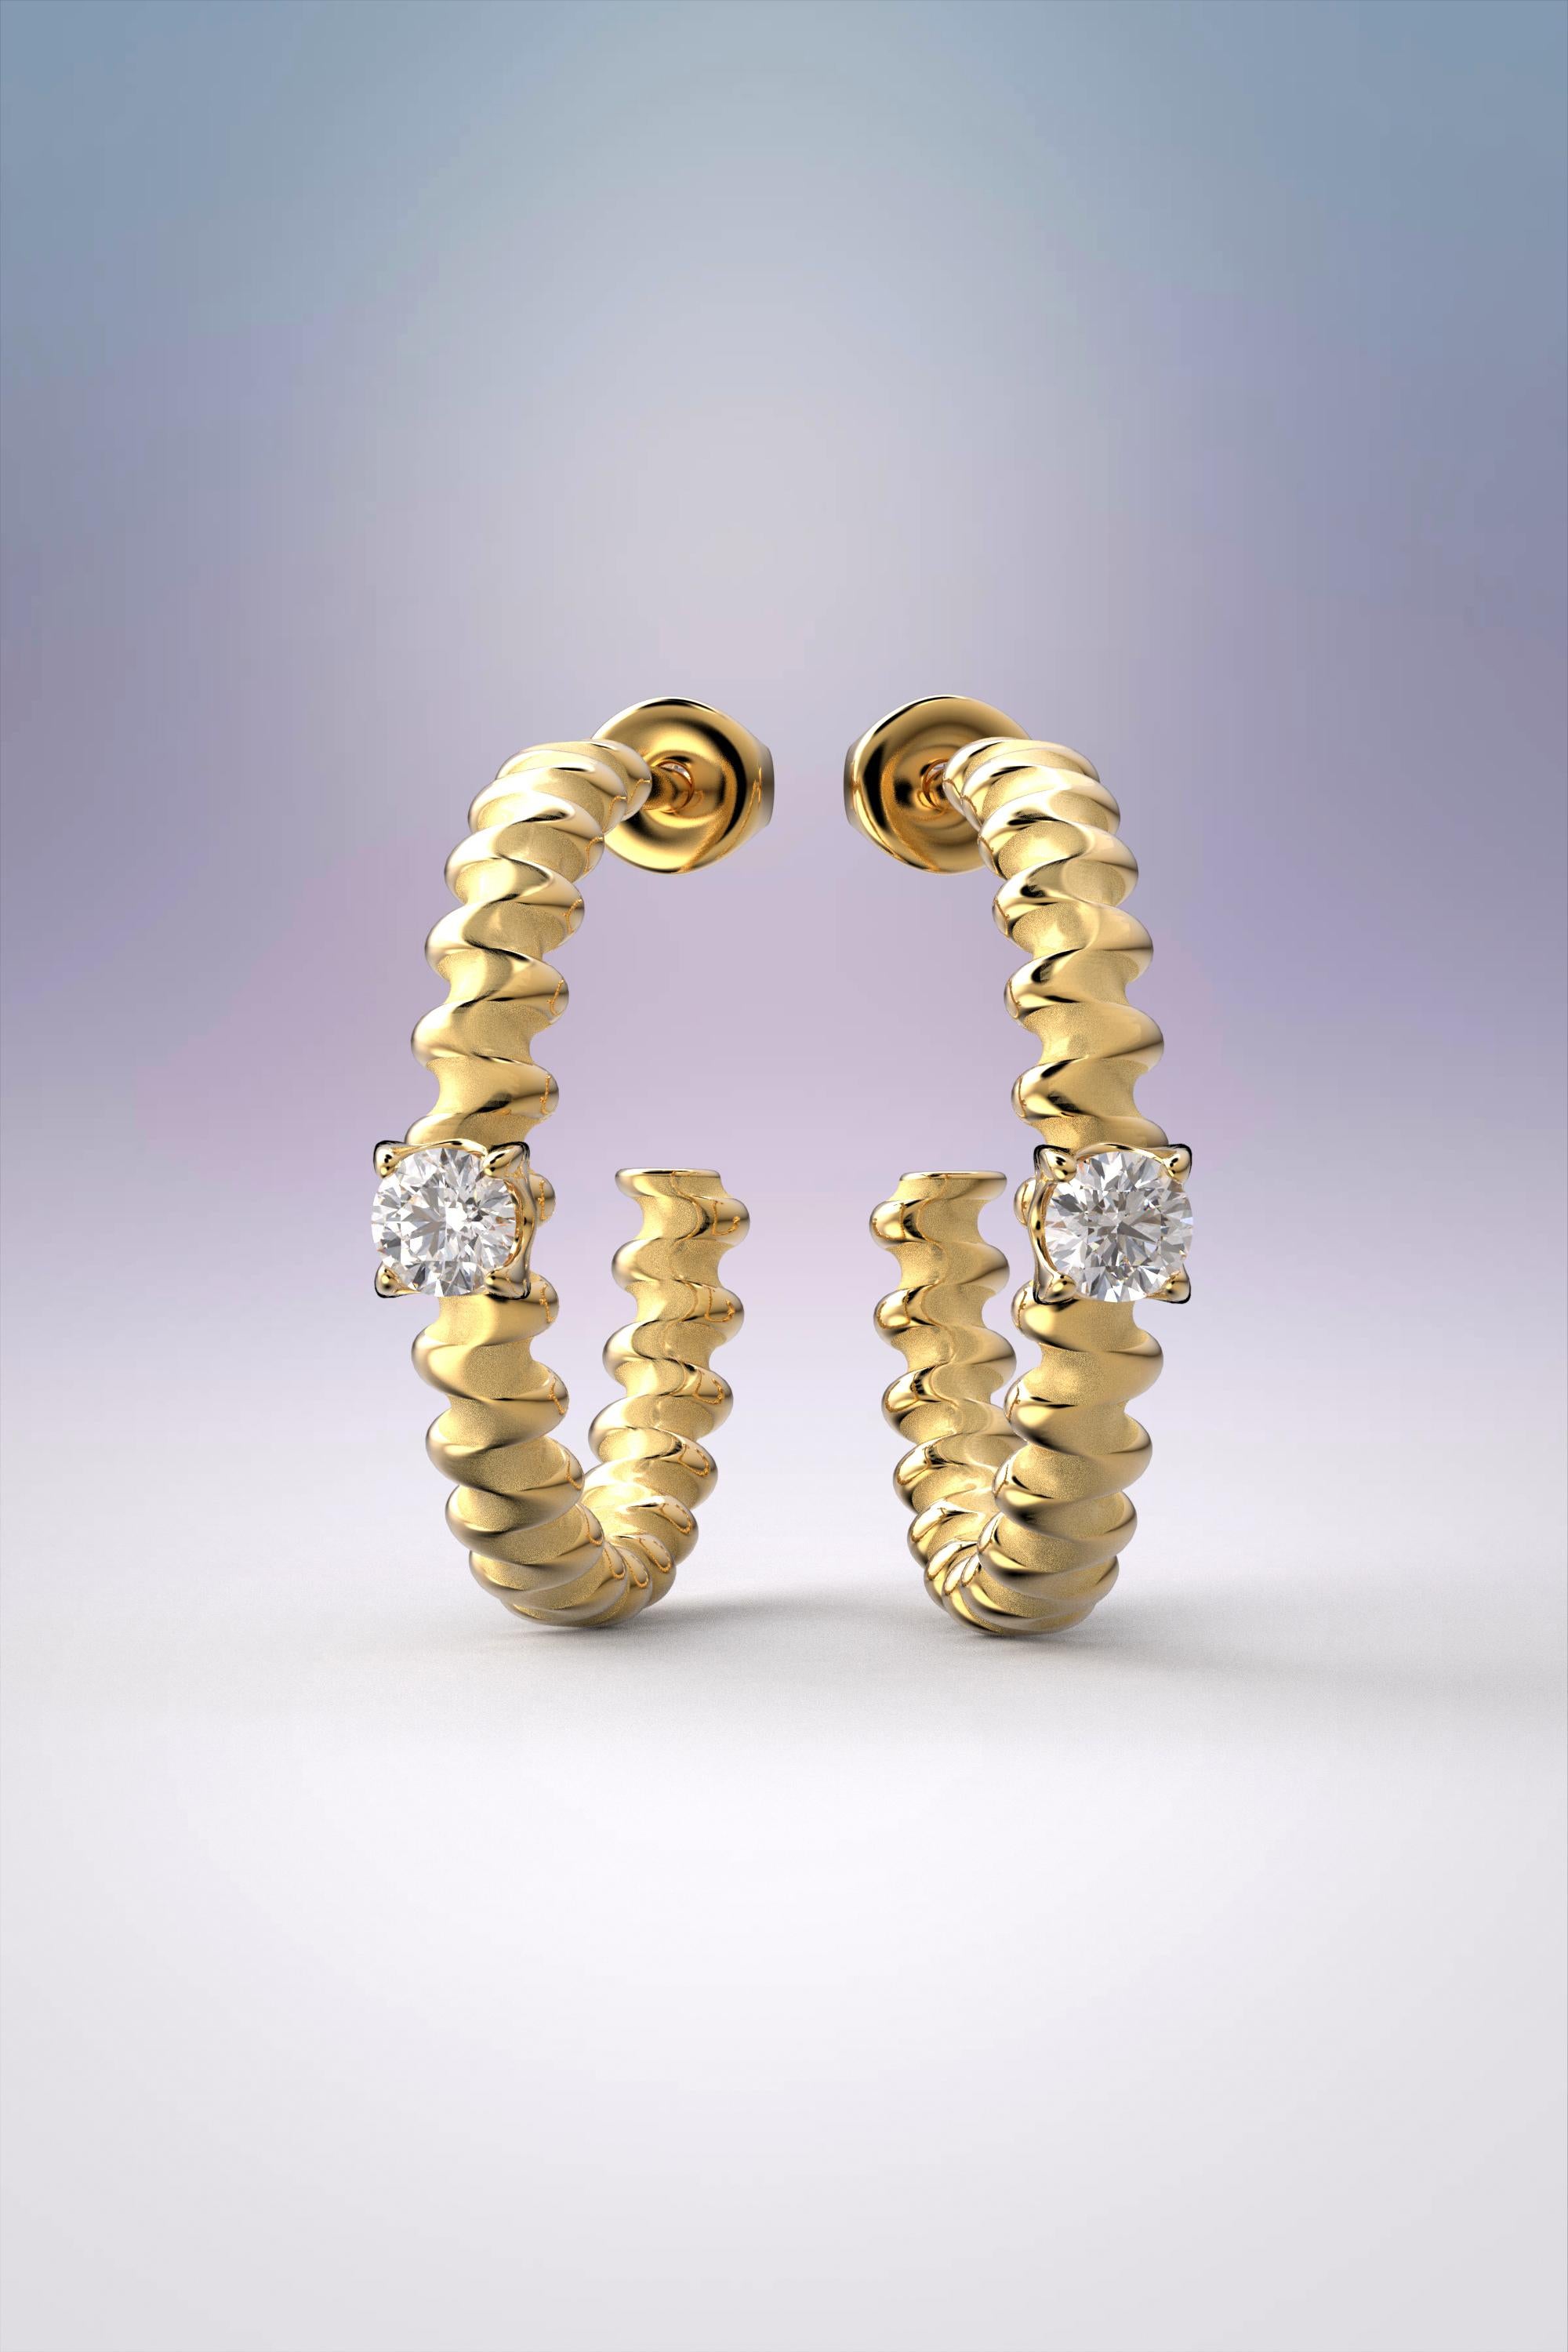 In Italien entworfene und gefertigte Diamant-Ohrringe nach Maß.
Elegante Ohrringe aus massivem 18-karätigem Gold mit natürlichen Diamanten, hergestellt in Italien.
18k Gold
Größe: 19mm x 19mm x 3,3 mm
Edelsteine (Diamant Version) : 2 natürliche